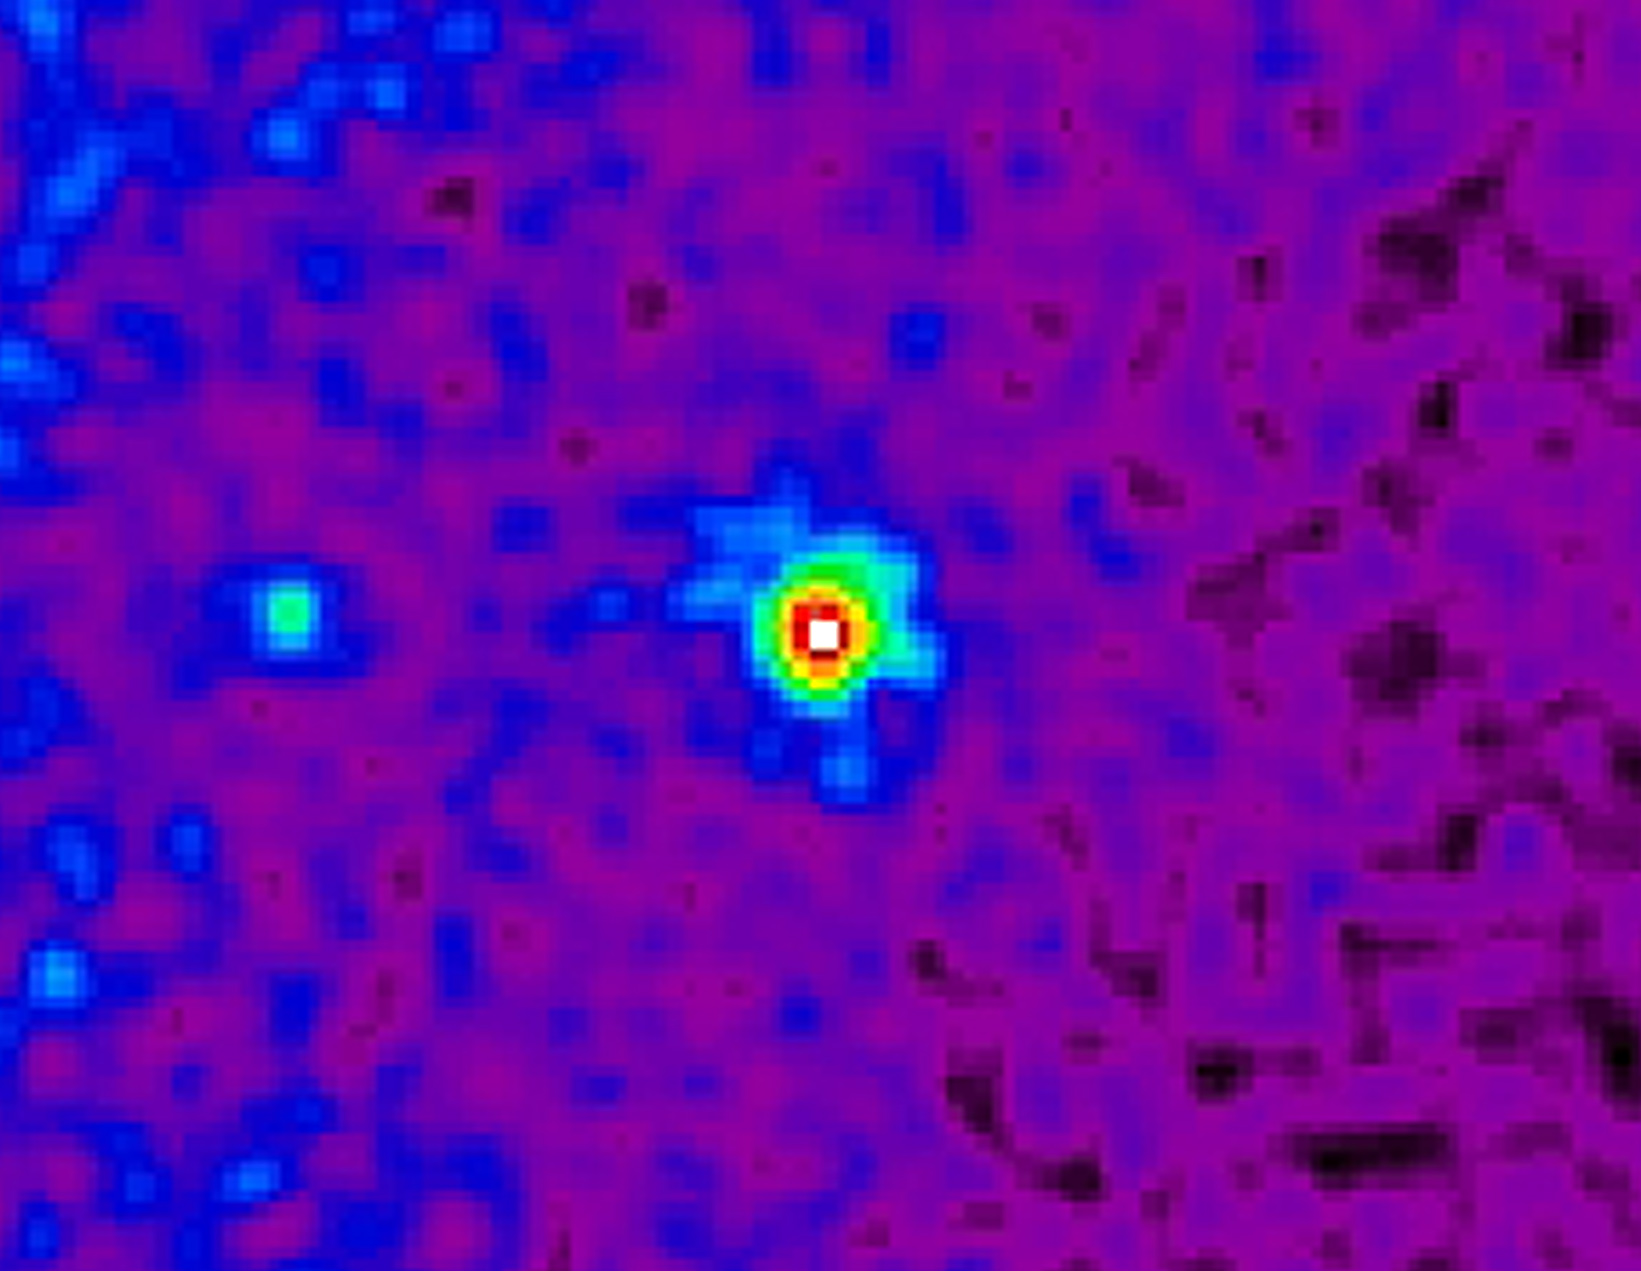 Fermi LAT gamma-ray image of NGC 1275